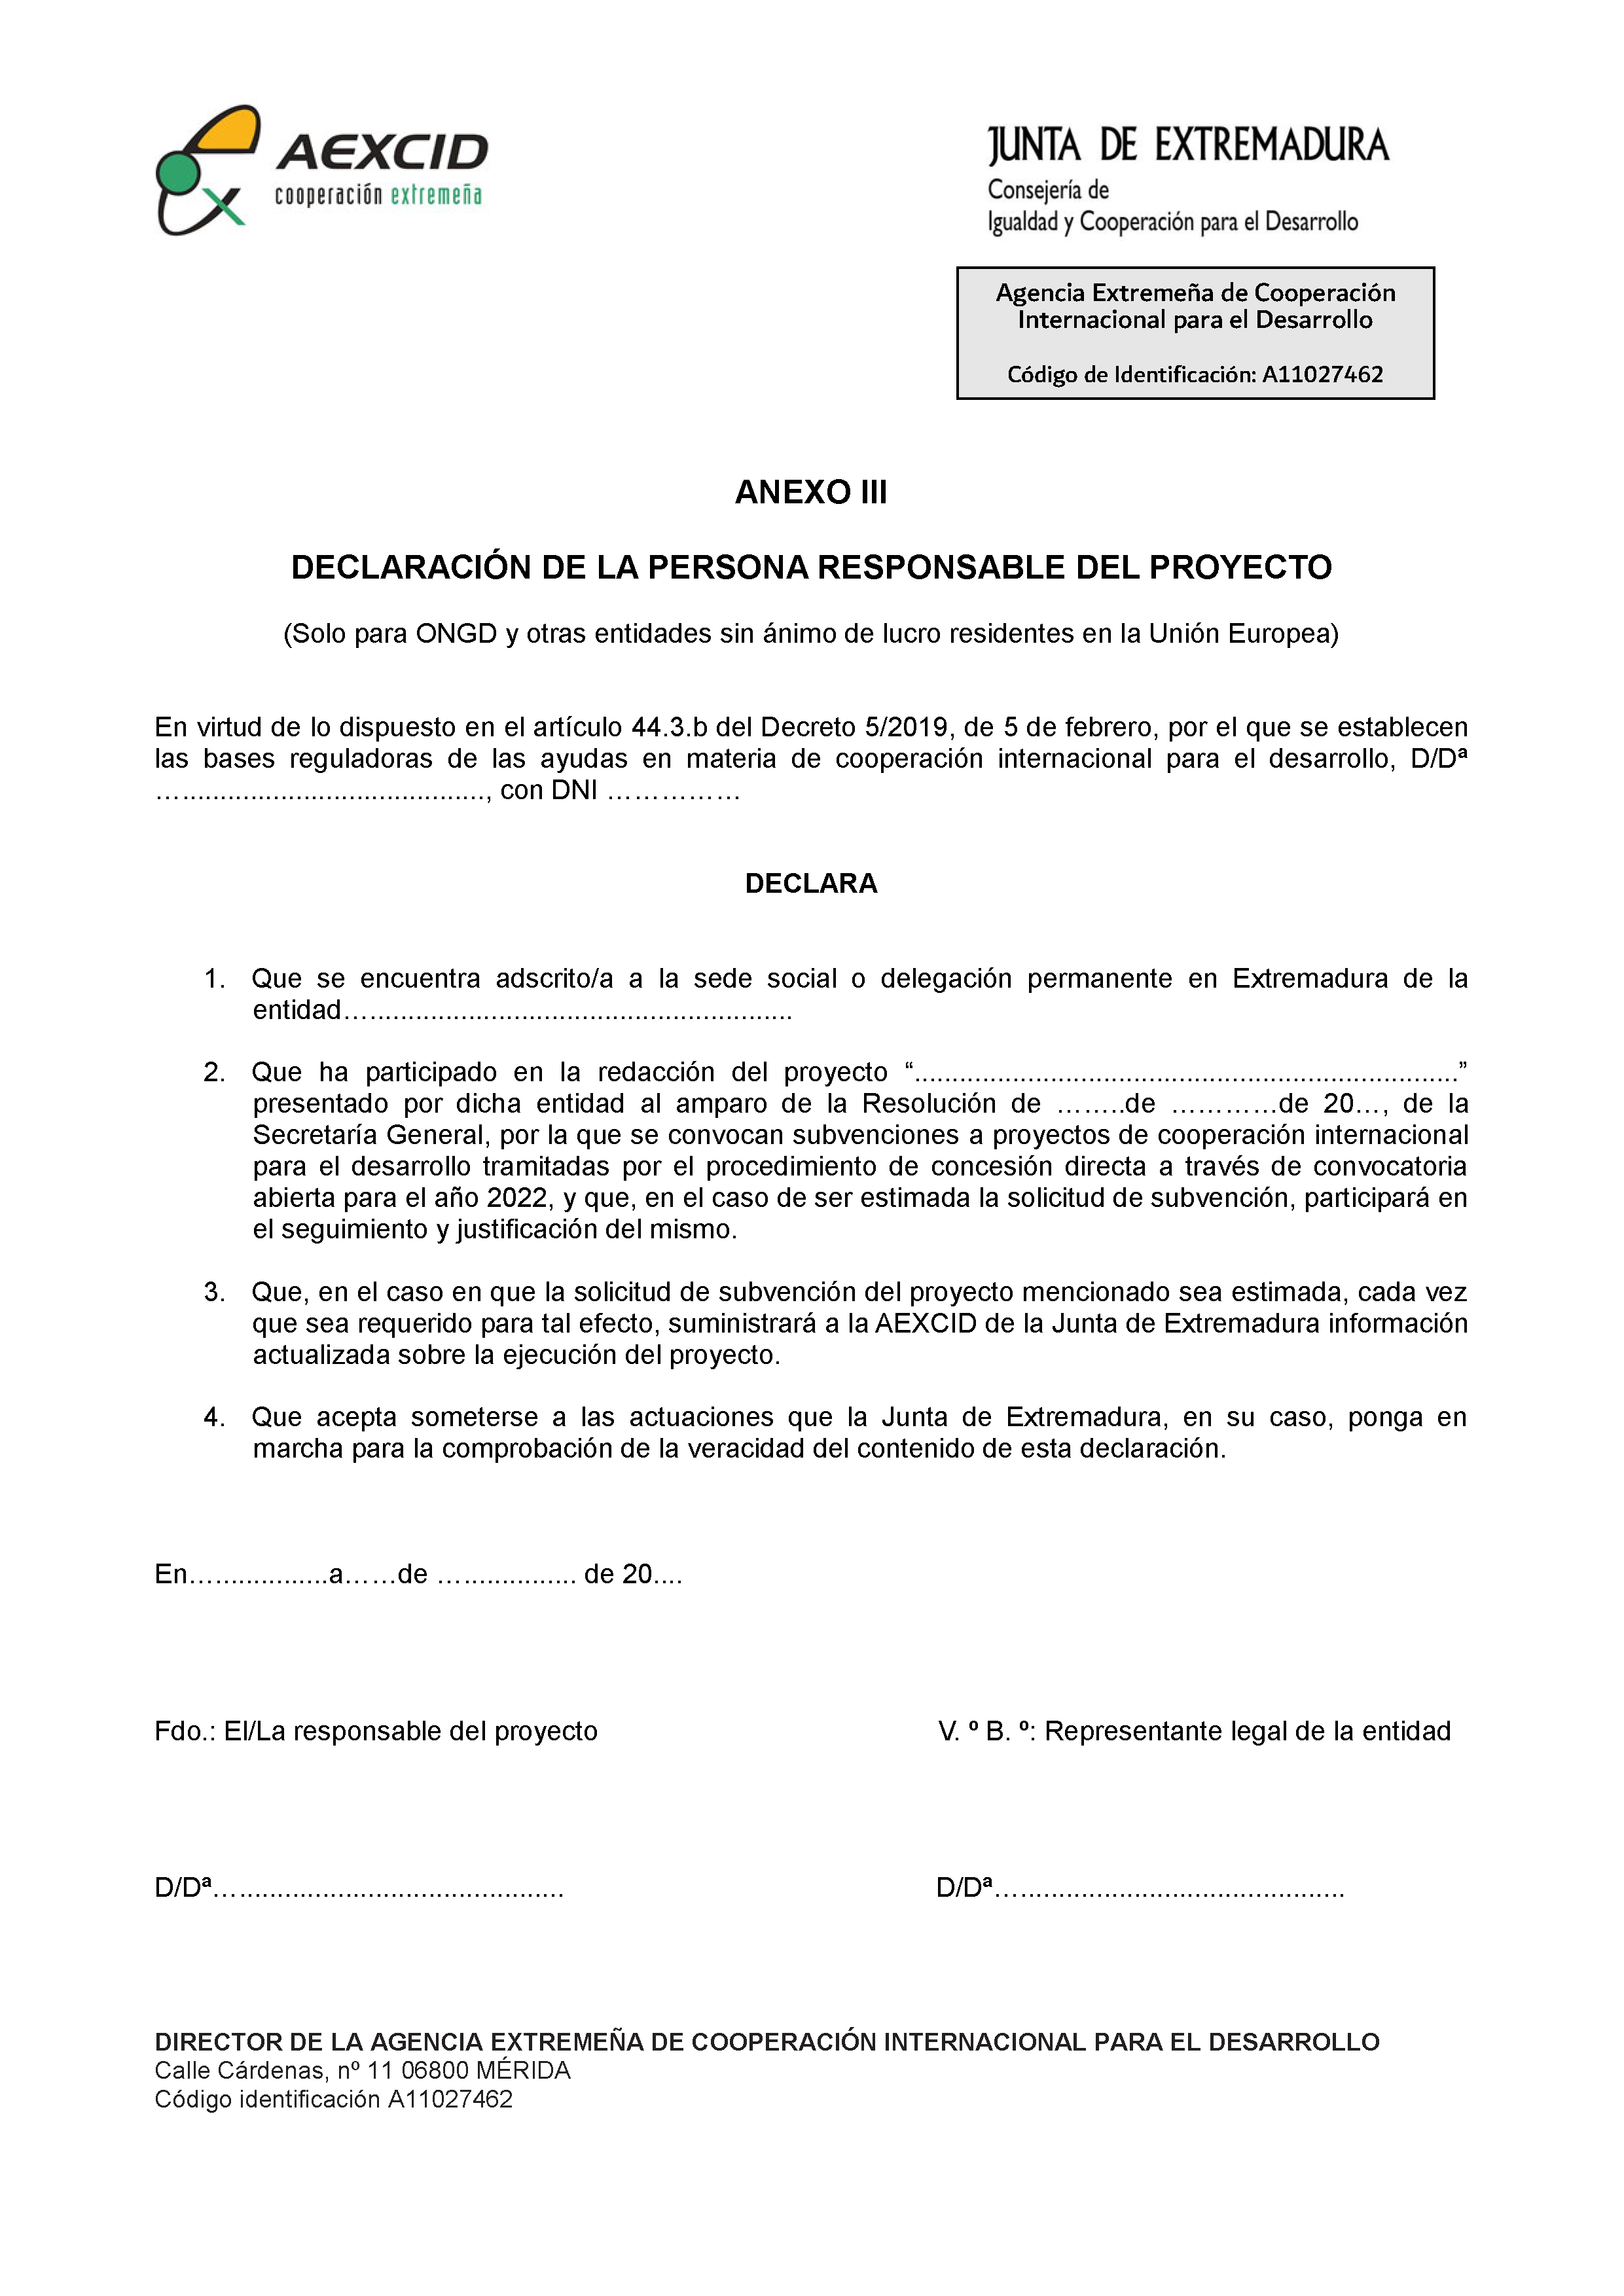 ANEXO III DECLARACION DE LA PERSONA RESPONSABLE DEL PROYECTO Pag 1